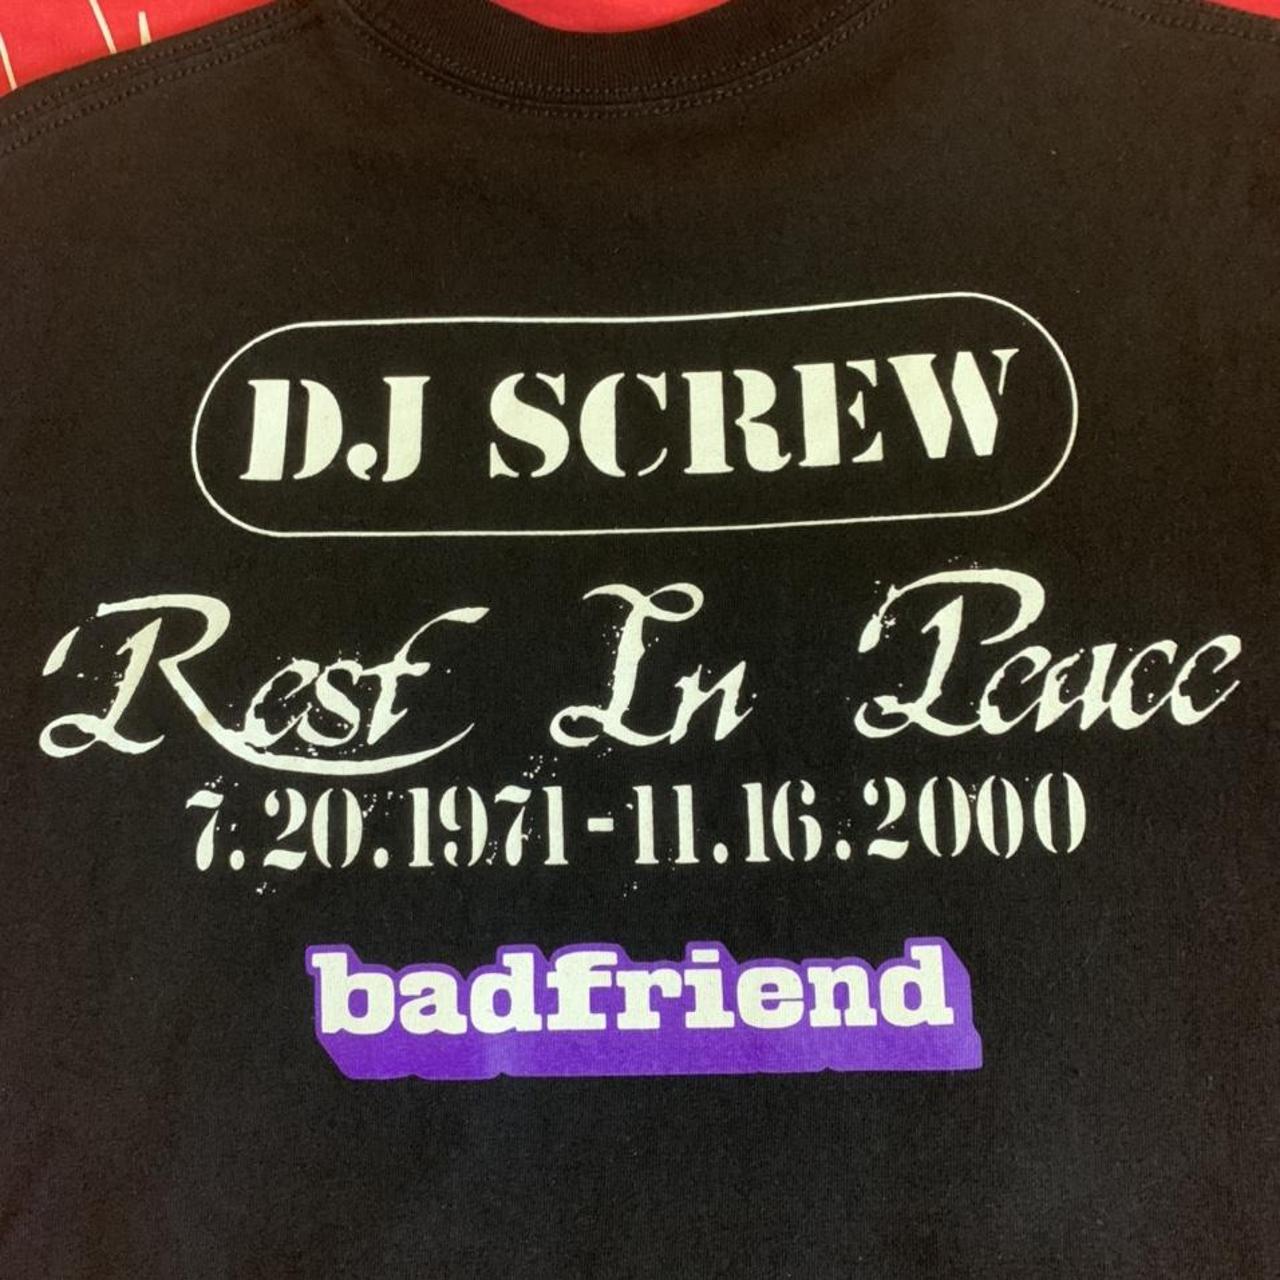 Badfriend Screw T-Shirts XL Tシャツ Dj新品です